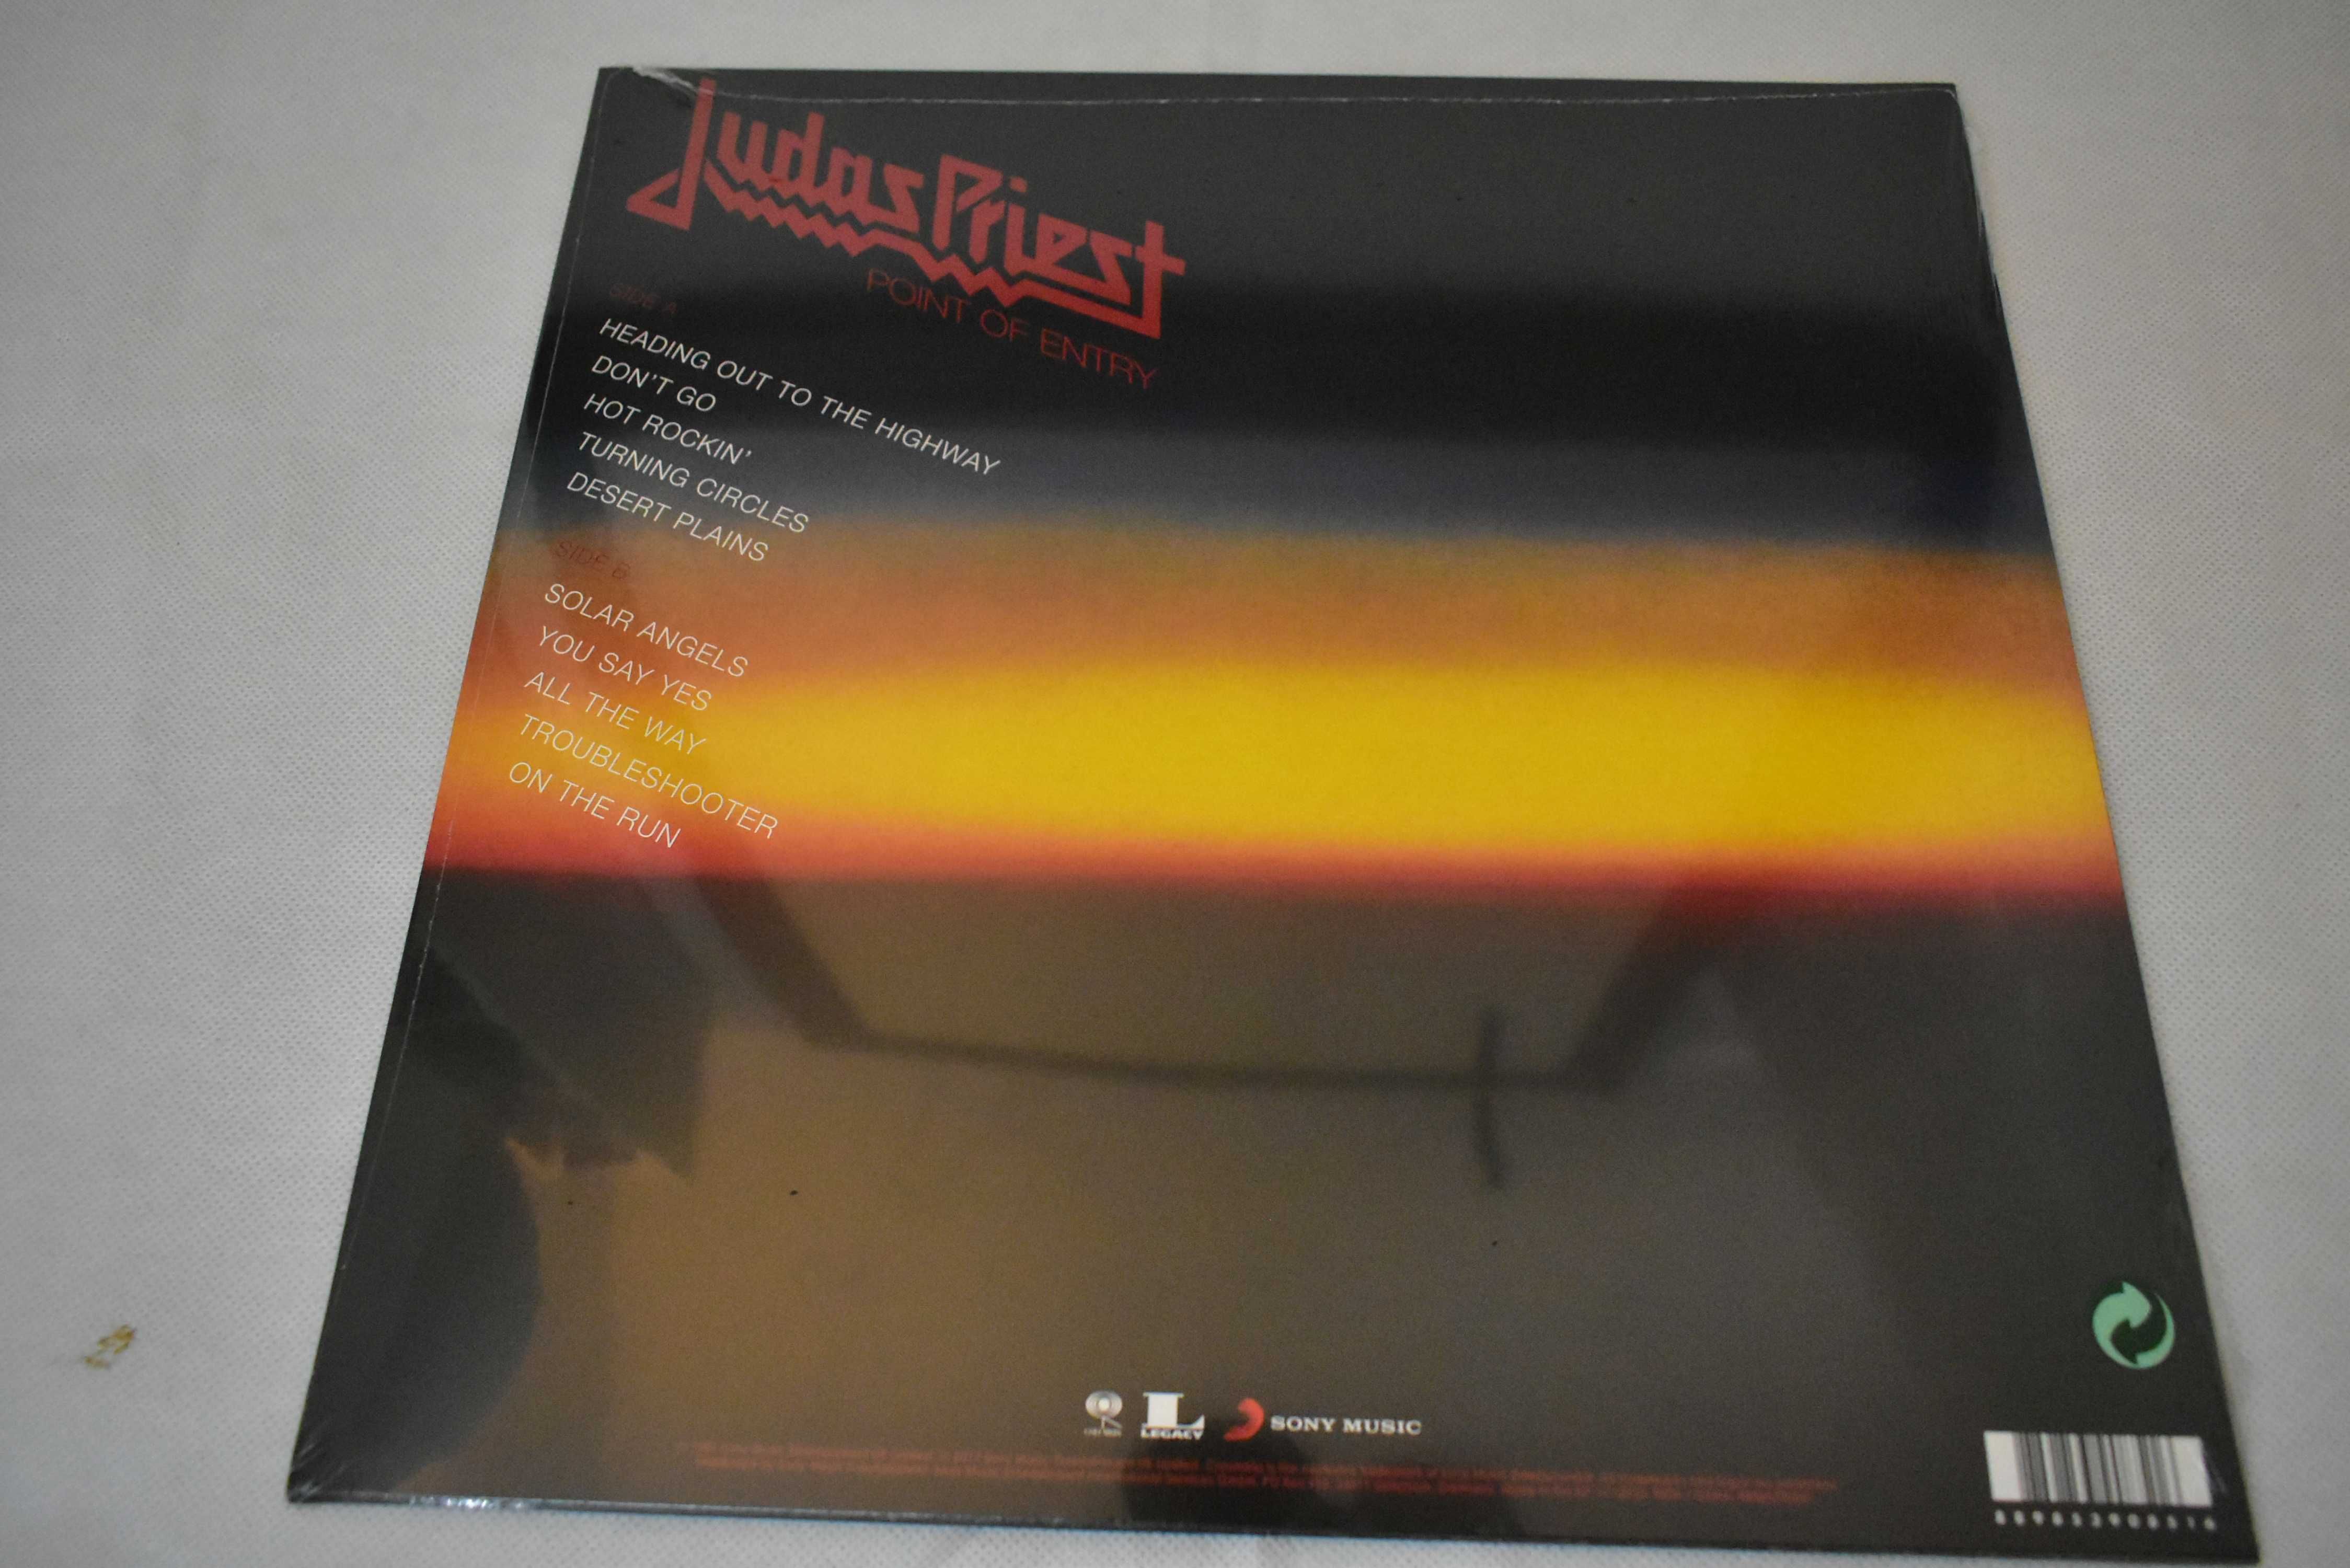 Płyta winylowa Judast Priest Point of entry vinyl